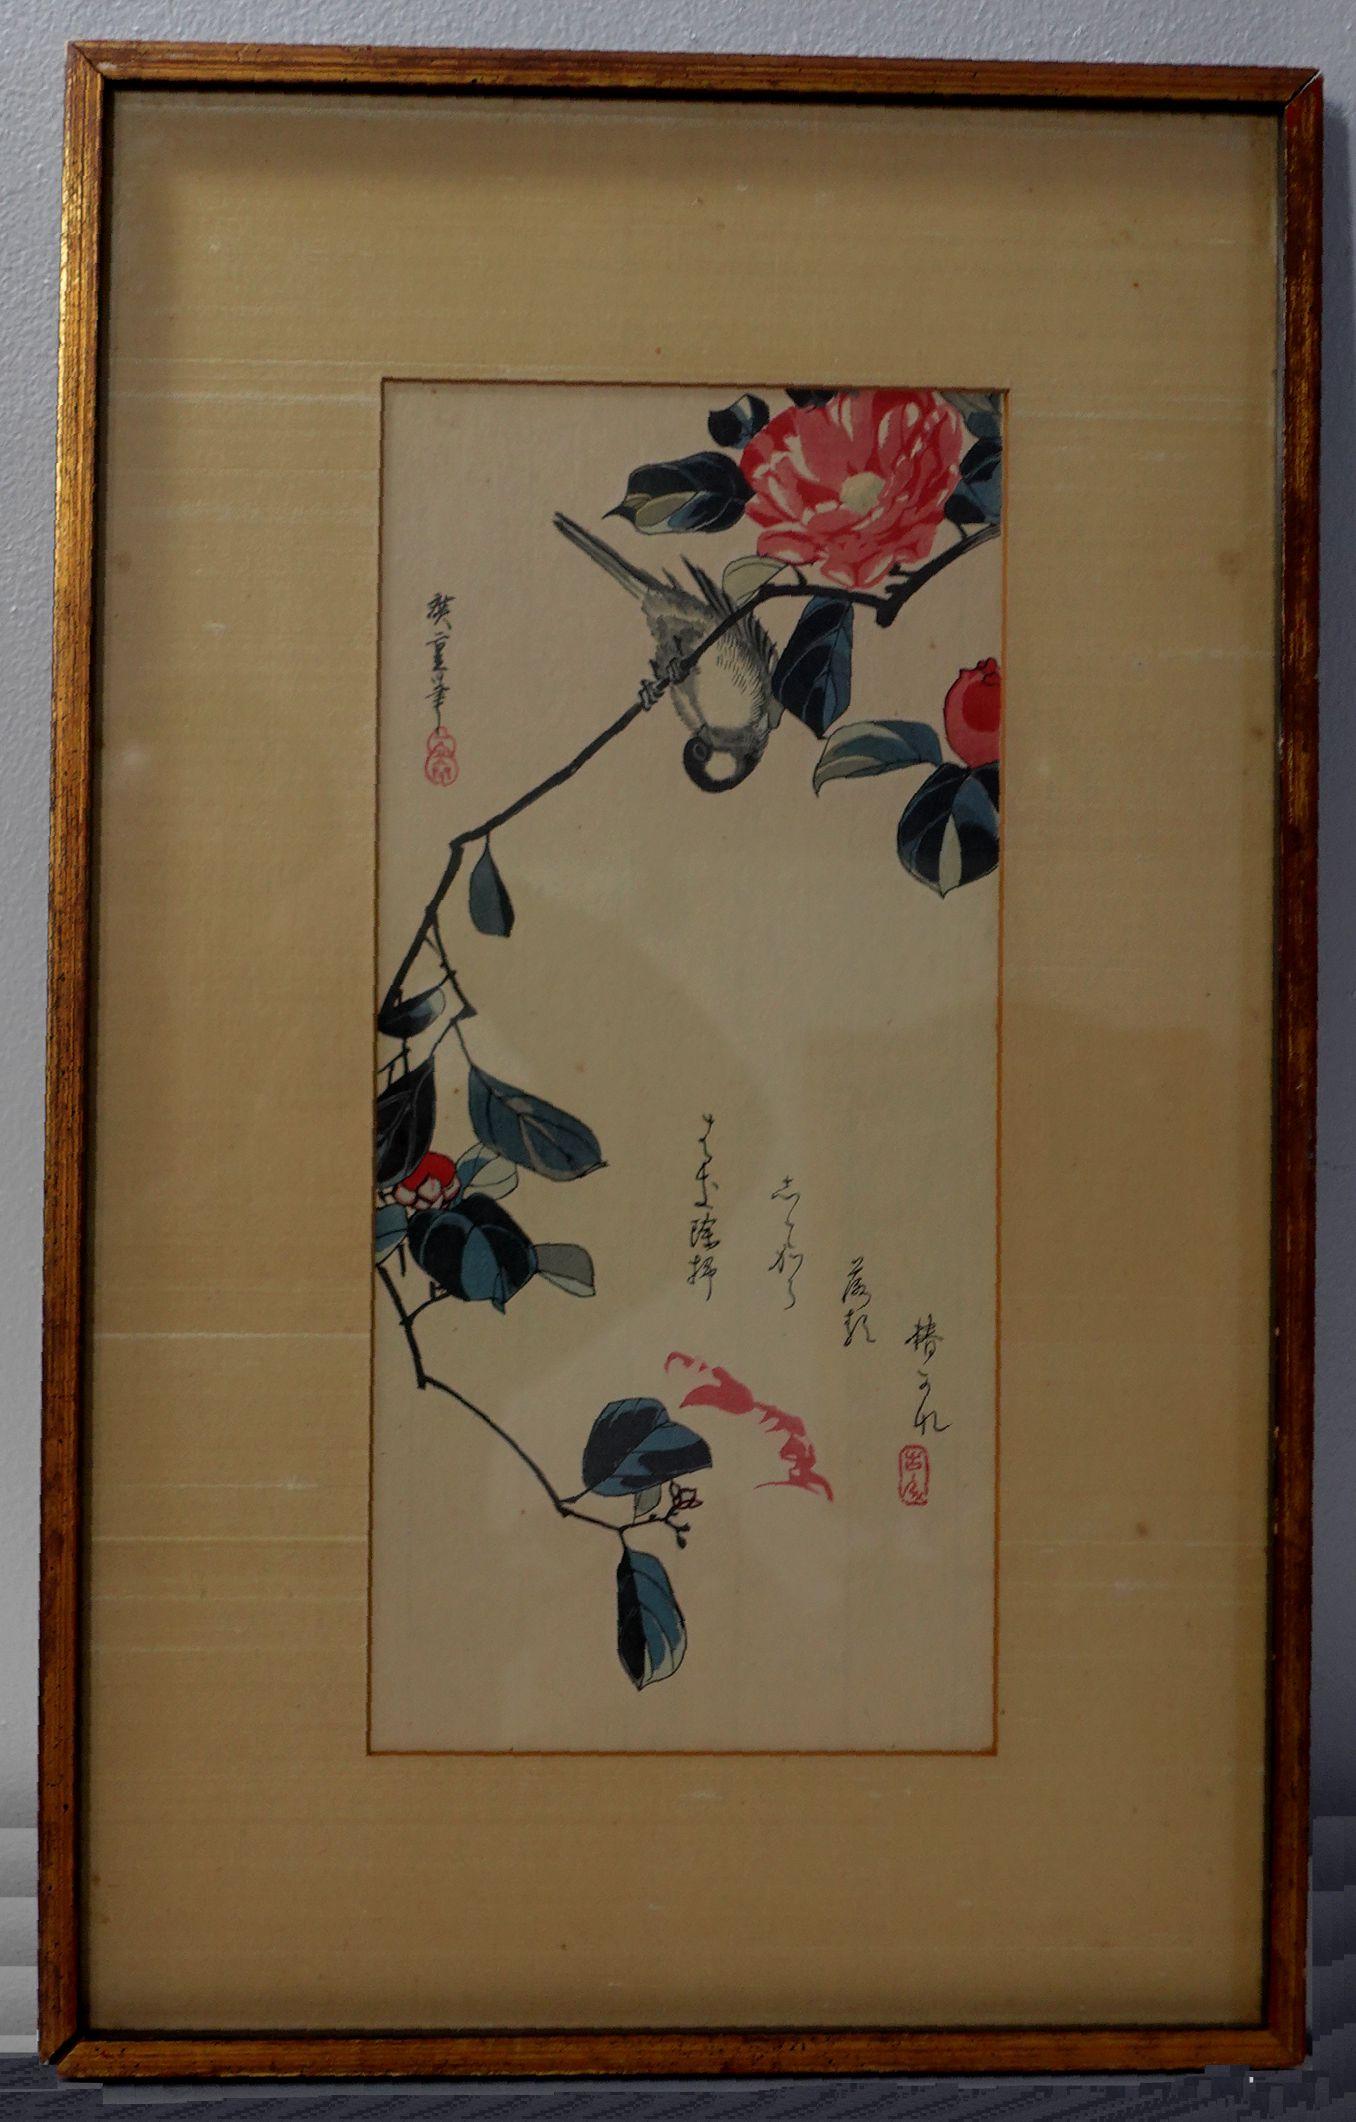 Utagawa Ando Hiroshige, Japaner, 1797 bis 1858, Farbholzschnitte auf Papier, Blumen und Vogel, signiert und bezeichnet in Hieroglyphen und roter Tinte Stempel oben links und unten rechts und gerahmt in Toyko, Japan.
Utagawa Hiroshige, geboren als